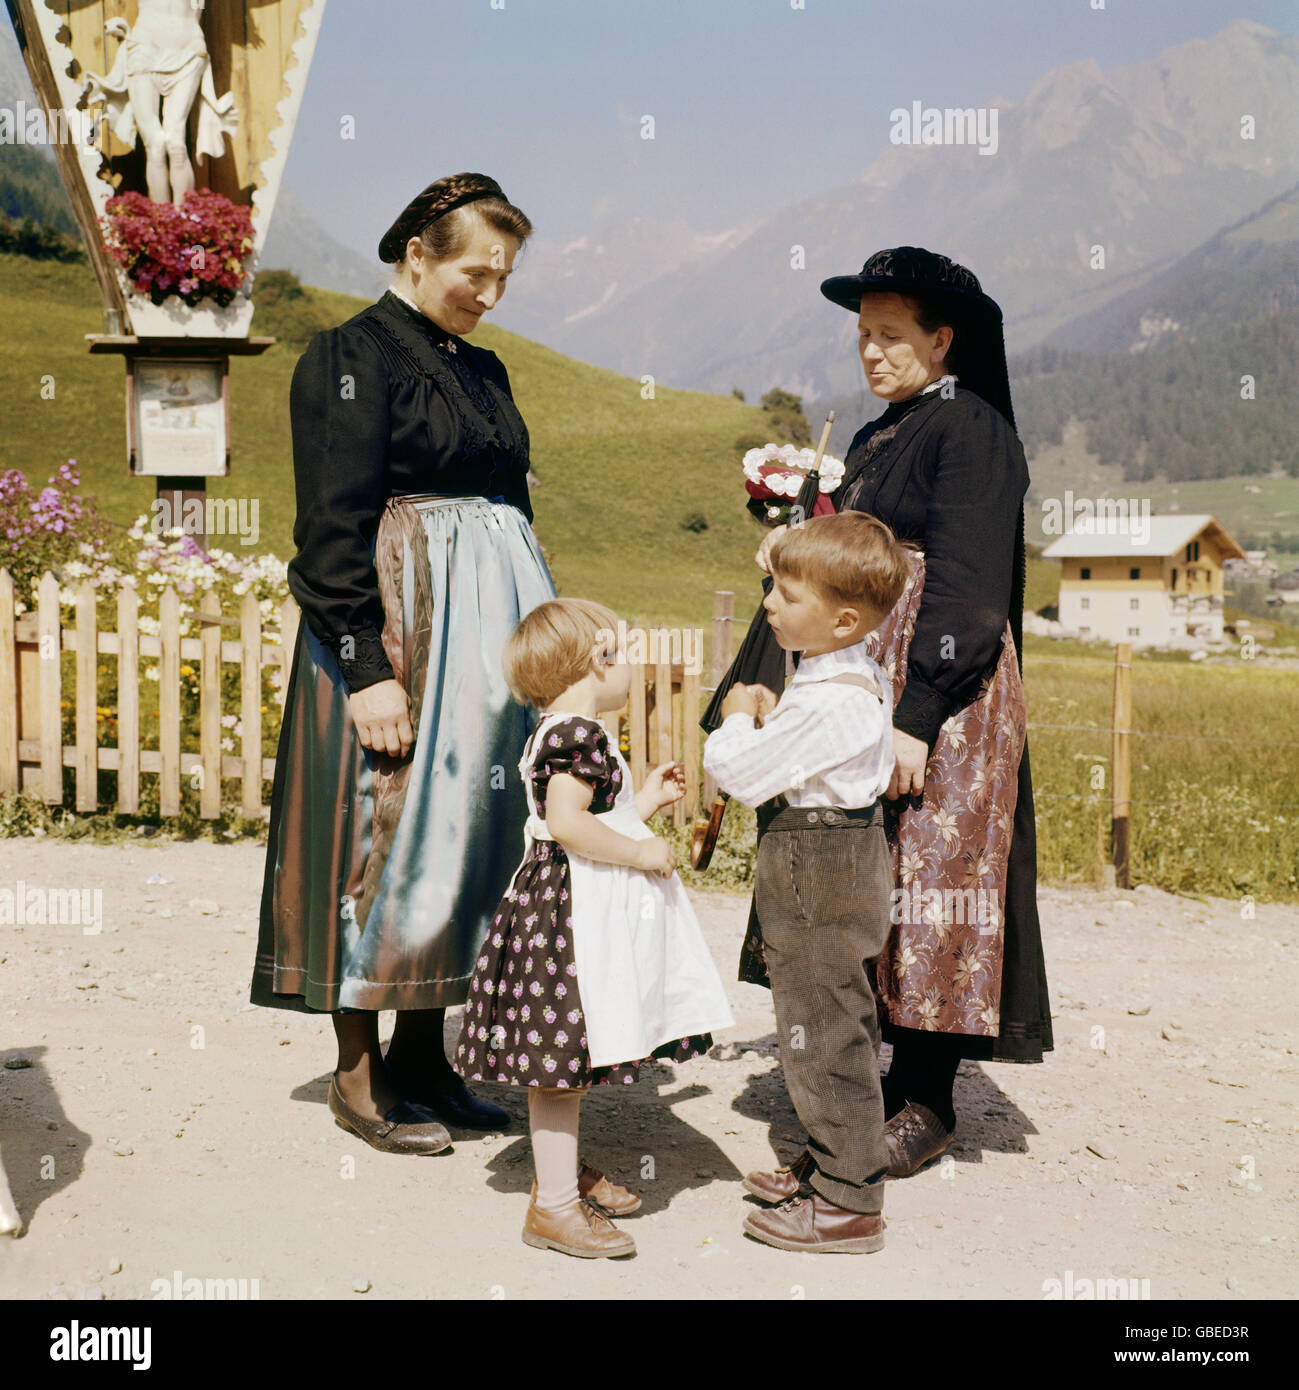 Tradition / Folklore, Trachten, Tirol, 50er Jahre, zwei Frauen und zwei  Kinder in kirchlicher Kleidung, Zusatzrechte-Clearences-nicht vorhanden  Stockfotografie - Alamy